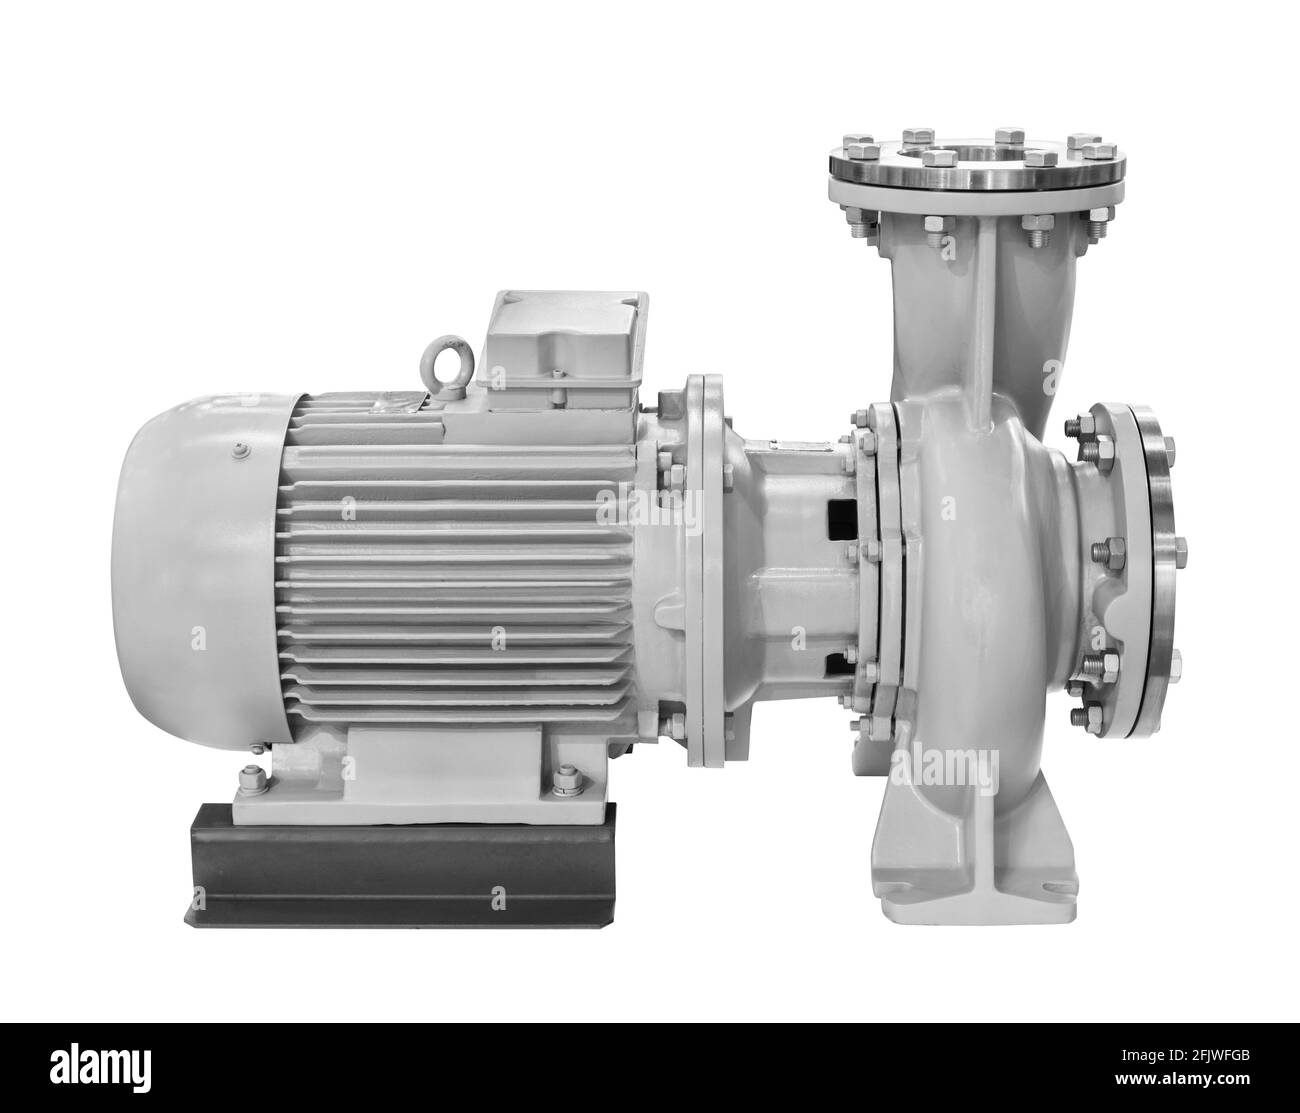 Industrielle Hochdruck-Wasserpumpe mit elektrischem Motorantrieb isoliert  auf weißem Hintergrund Stockfotografie - Alamy